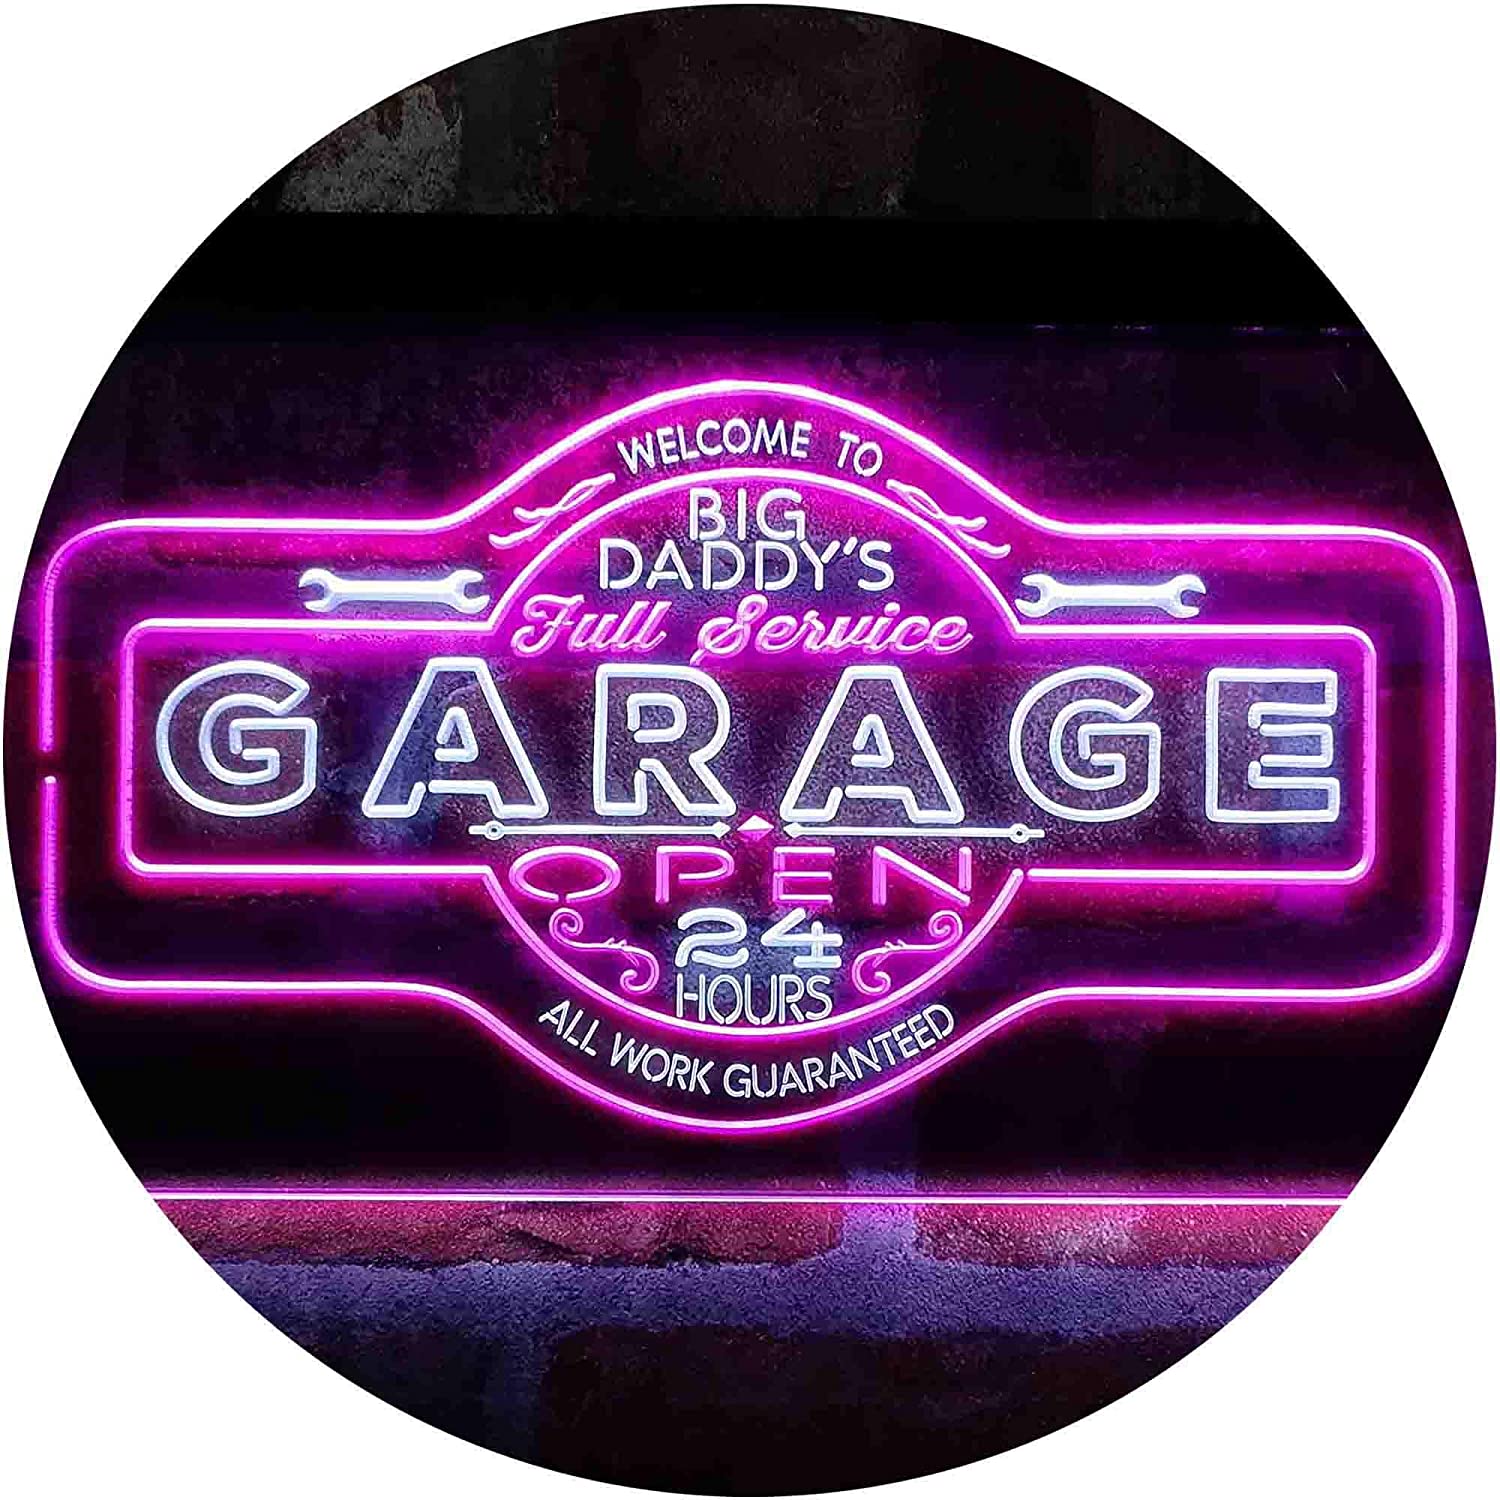 Honda Light Sign Neon LED Game Room , Bar , garage Man Cave Sign LARGE  16x12”